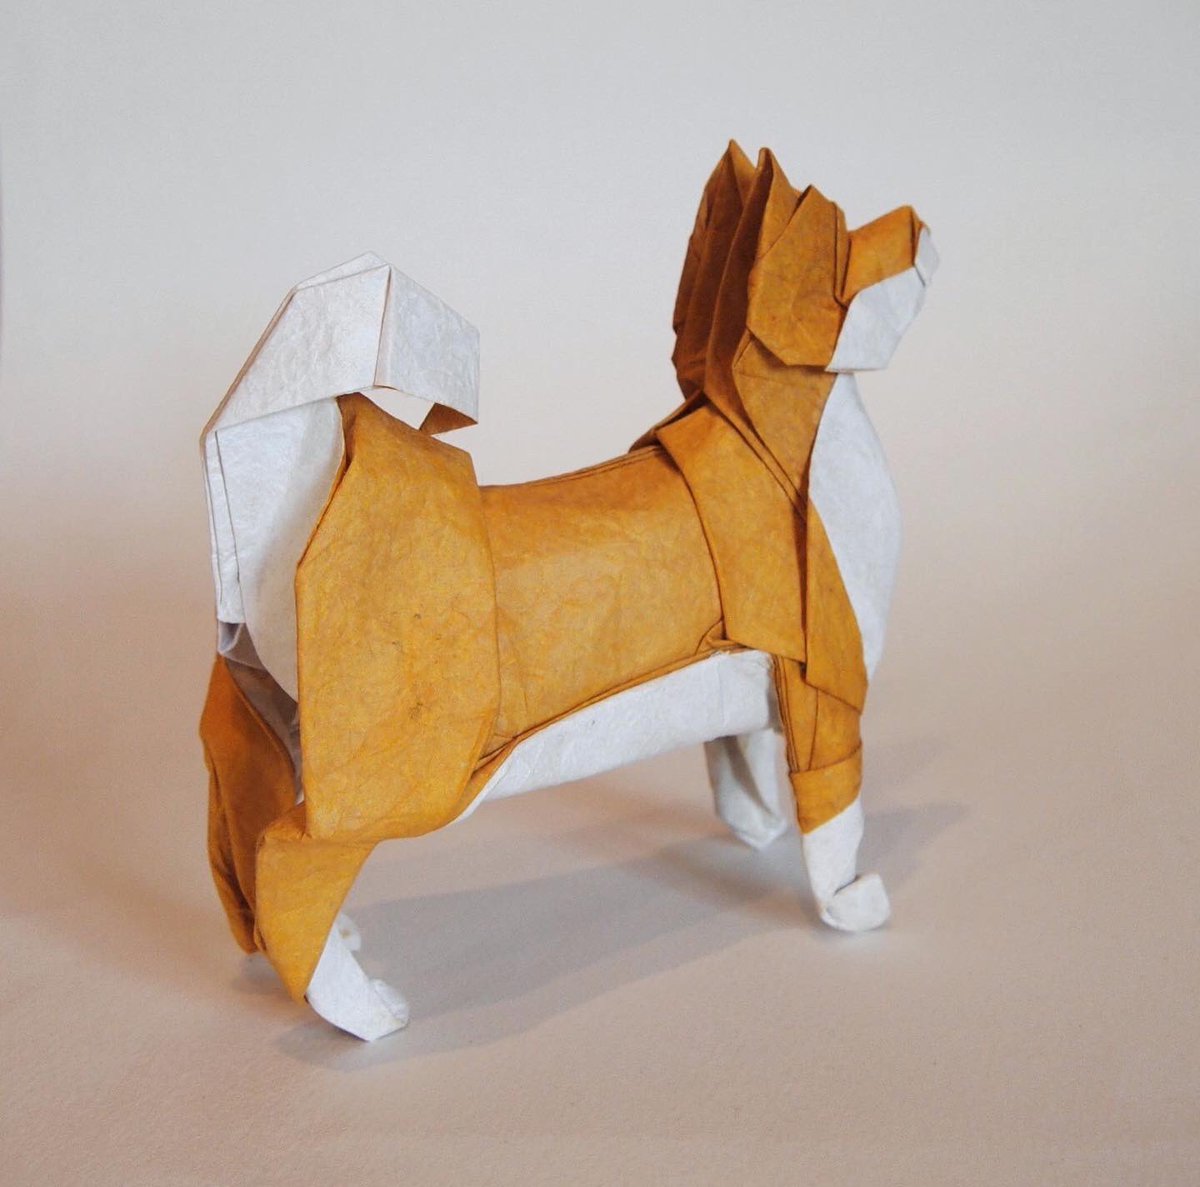 一匹柴犬 折り紙作品 柴犬 創作 折り 一匹柴犬 昔折った柴犬をリニューアルしました 下半身を改善 だいたい説明できる折り方にできたので いつか 折り図描きます Origami Dog 折り紙 折り紙作品 柴犬 T Co Trxaeevo1m Twitter